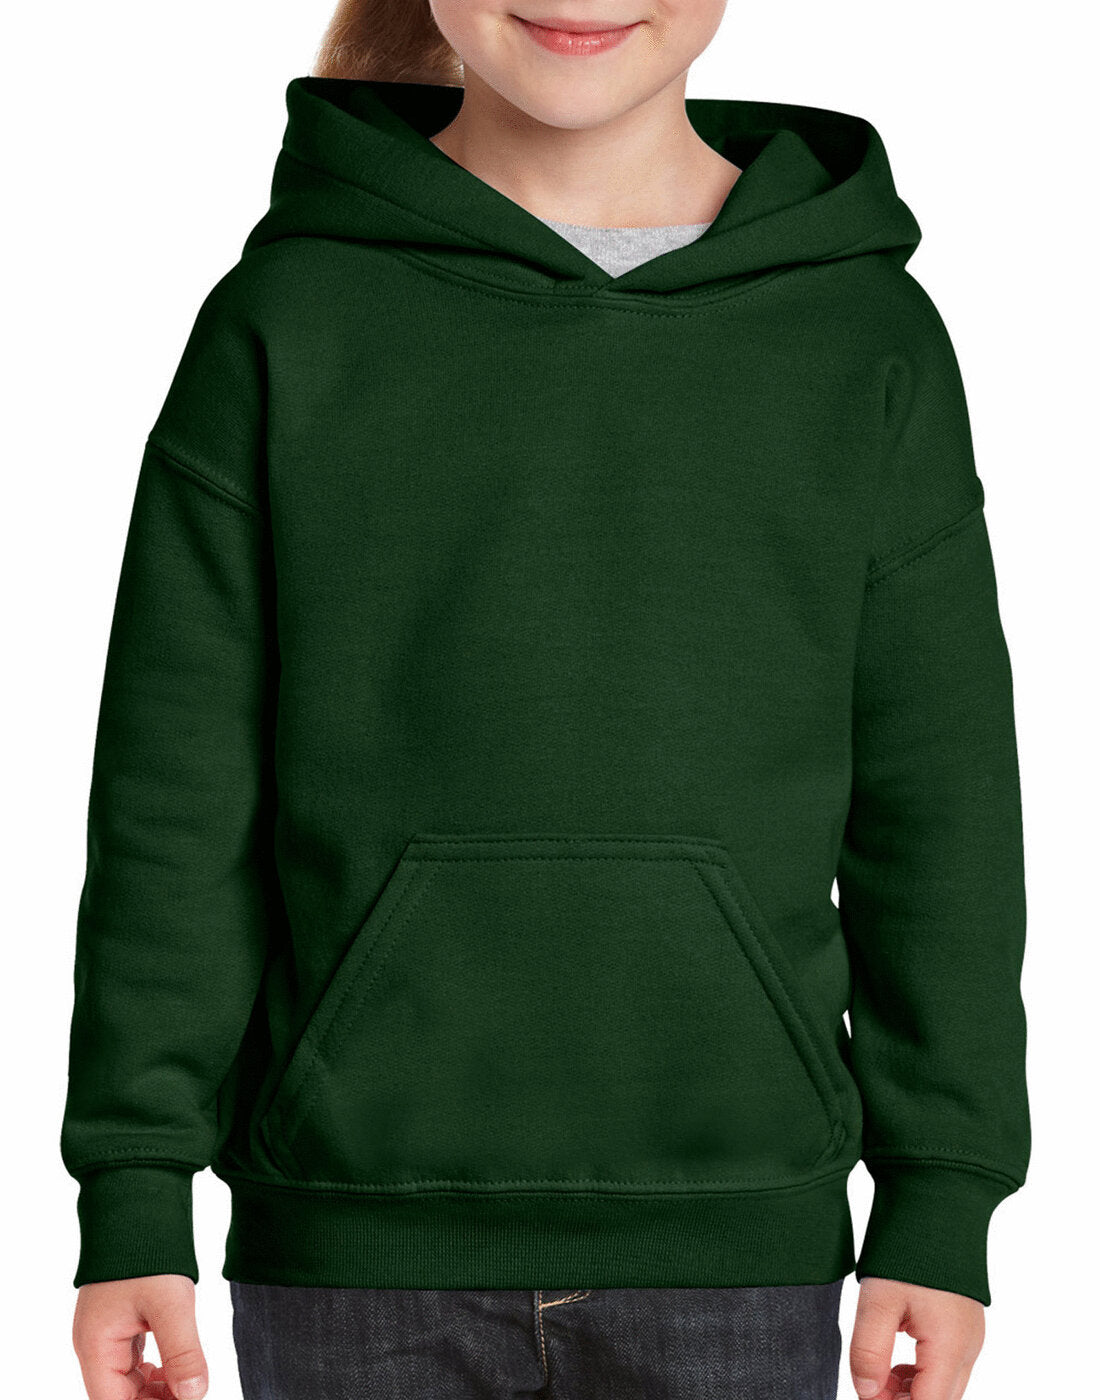 Gildan Kids Heavy Blend Hooded Sweatshirt - Forrest Green